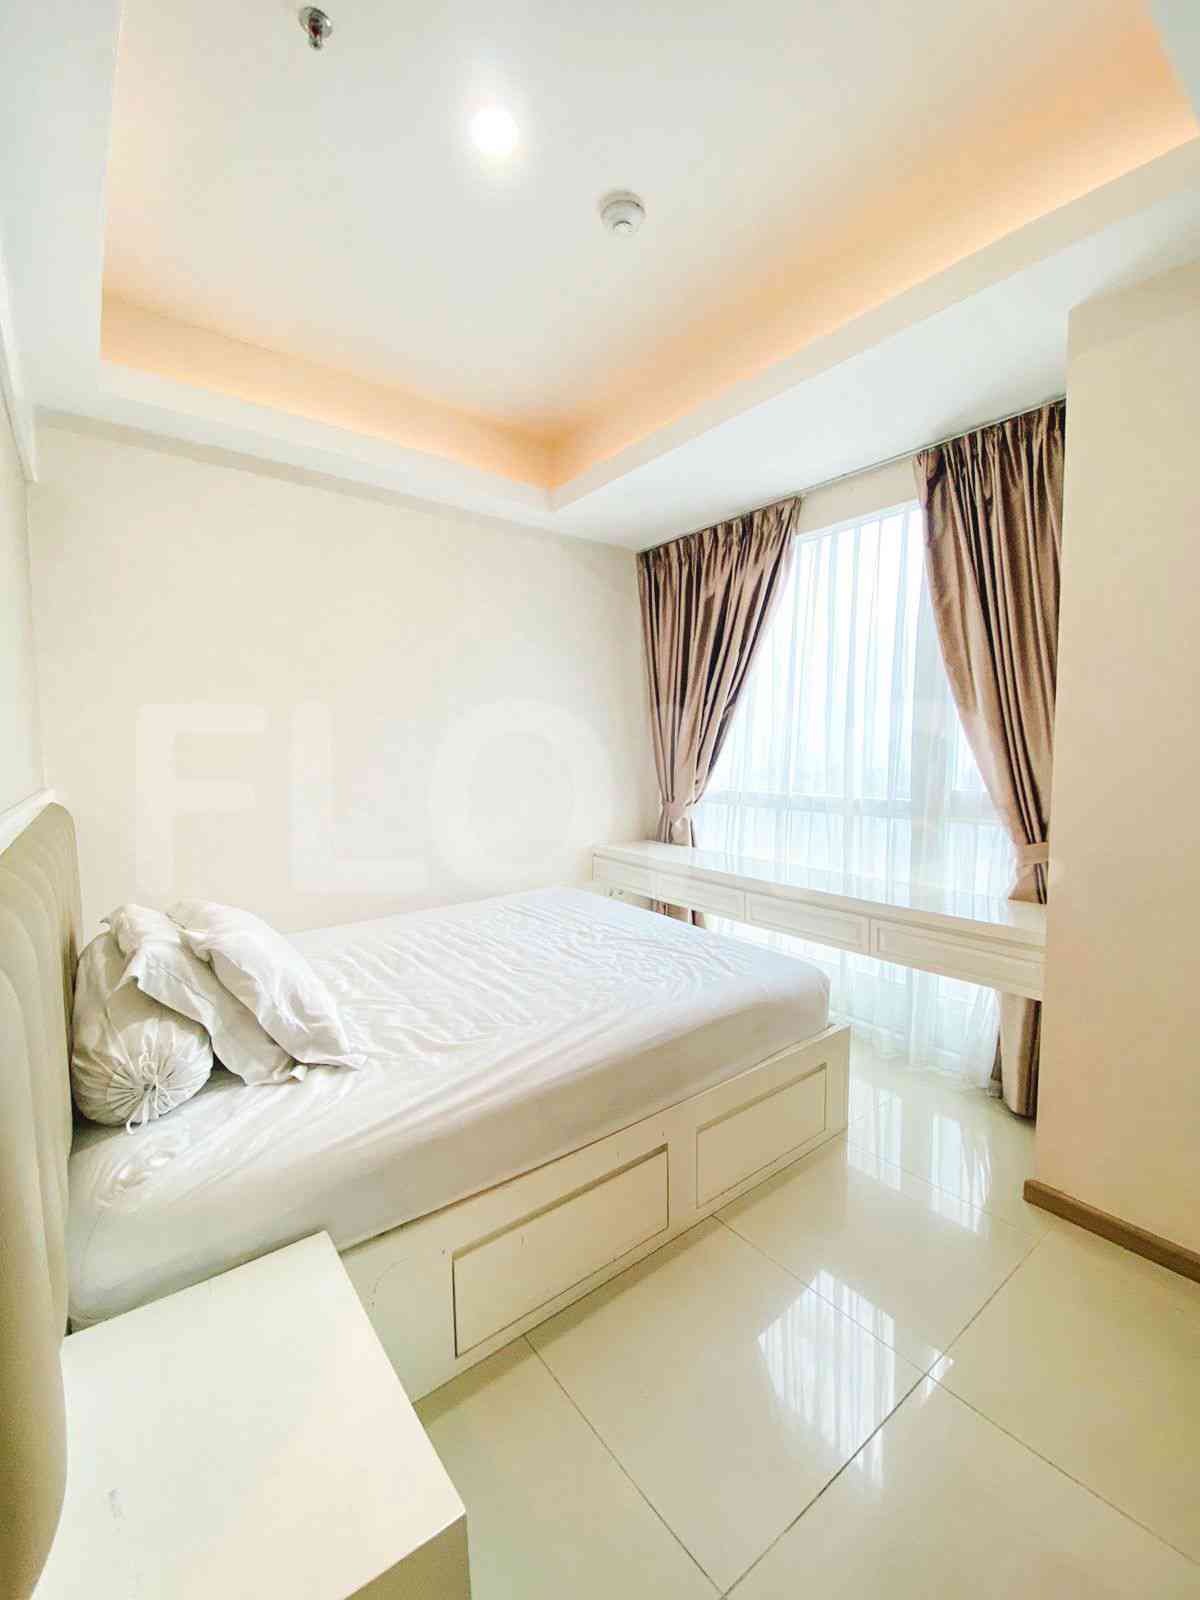 3 Bedroom on 17th Floor for Rent in Casa Grande - fte656 5